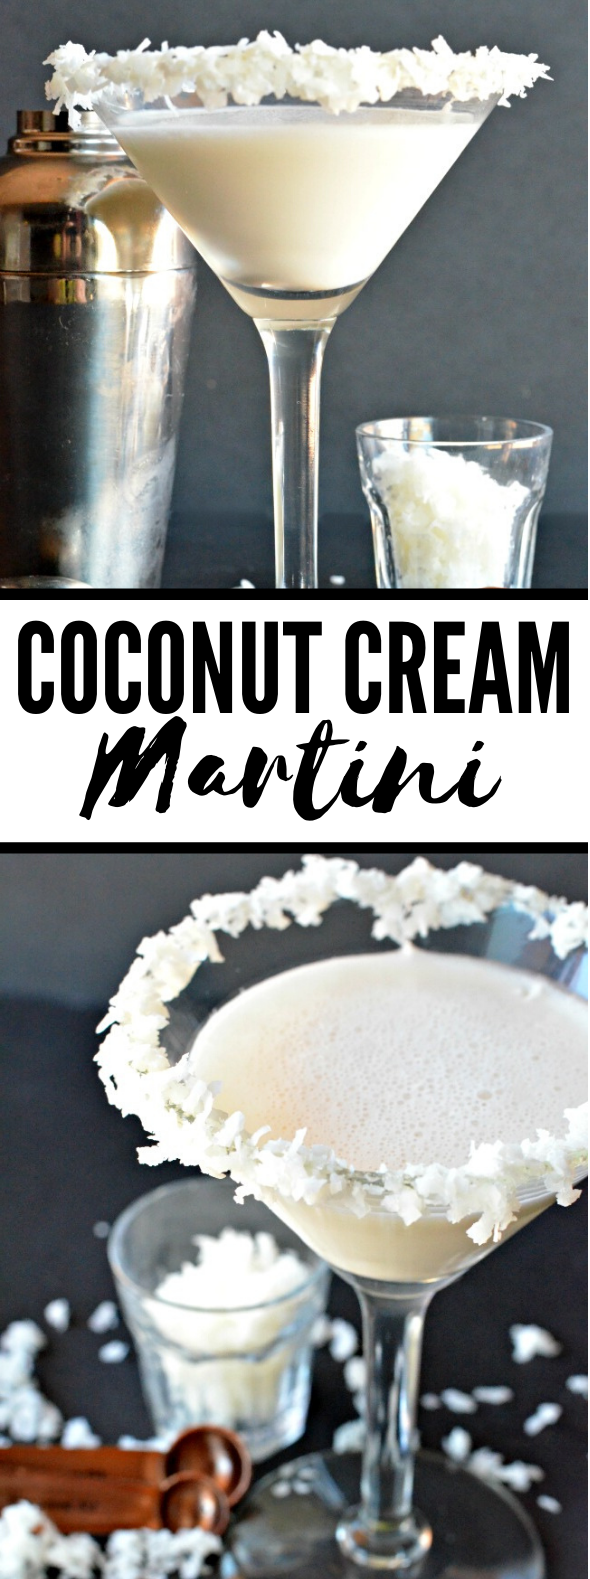 Coconut Cream Martini #drinks #cocktails